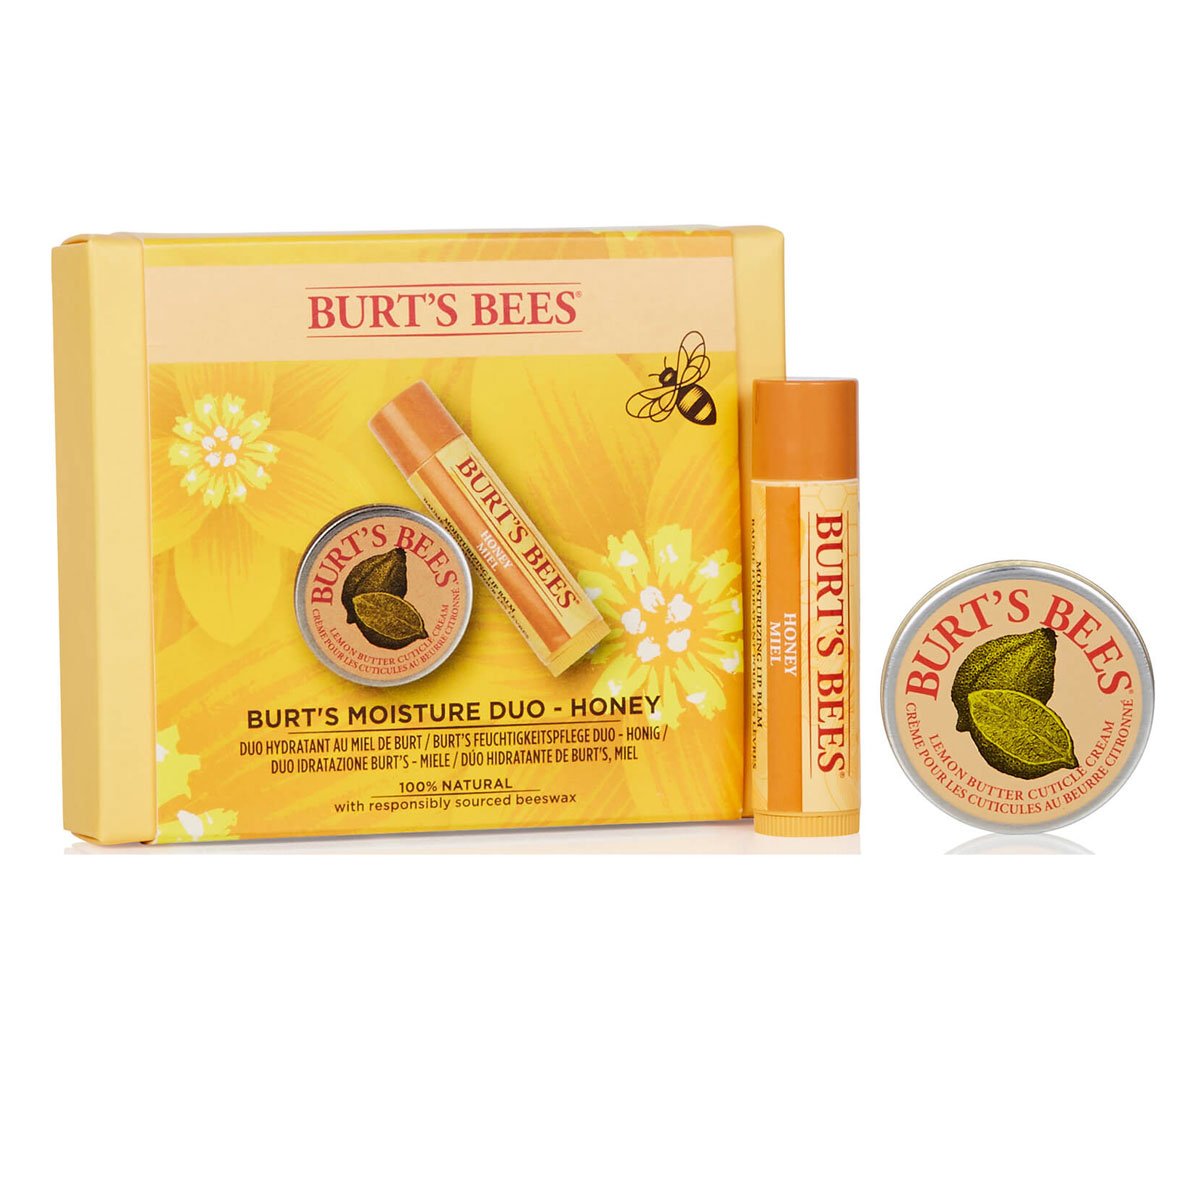 Burt's Bees Moisture Duo - Honey